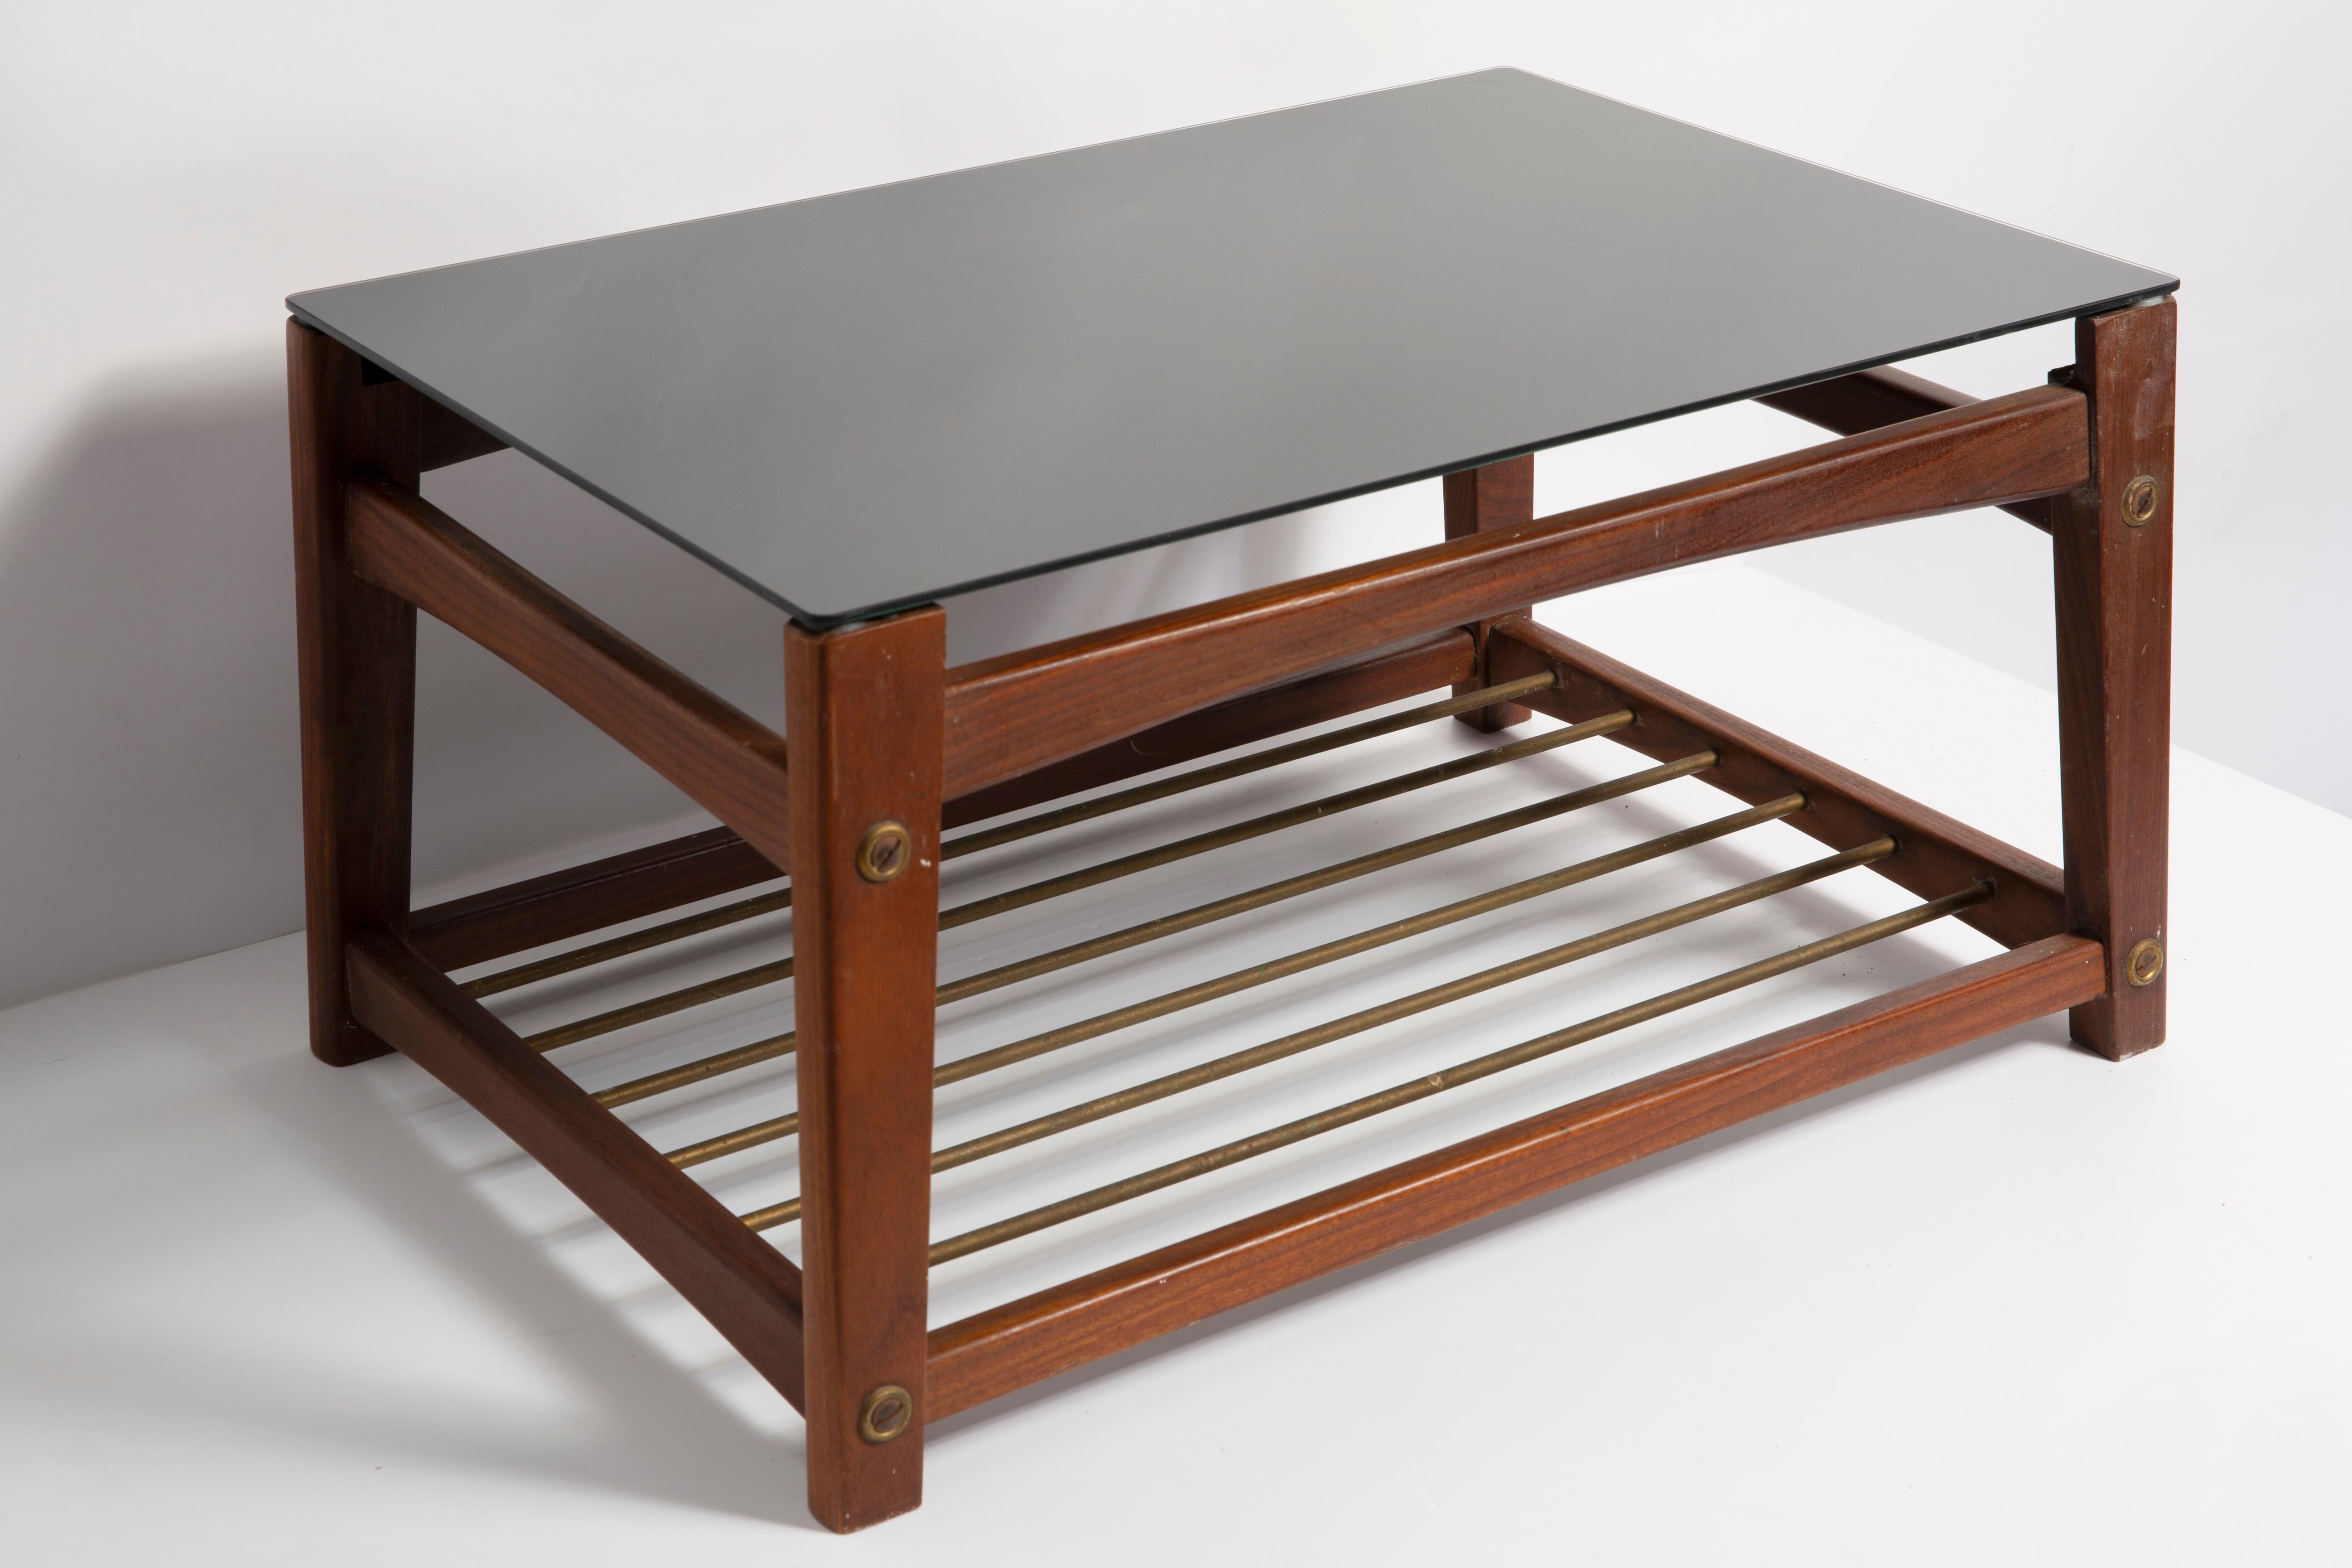 Petite table basse des années 1960. Il a été fabriqué en Suède dans les années 1960. La table a été fabriquée en bois et en verre, elle est dans un état vintage original. Une seule pièce unique.